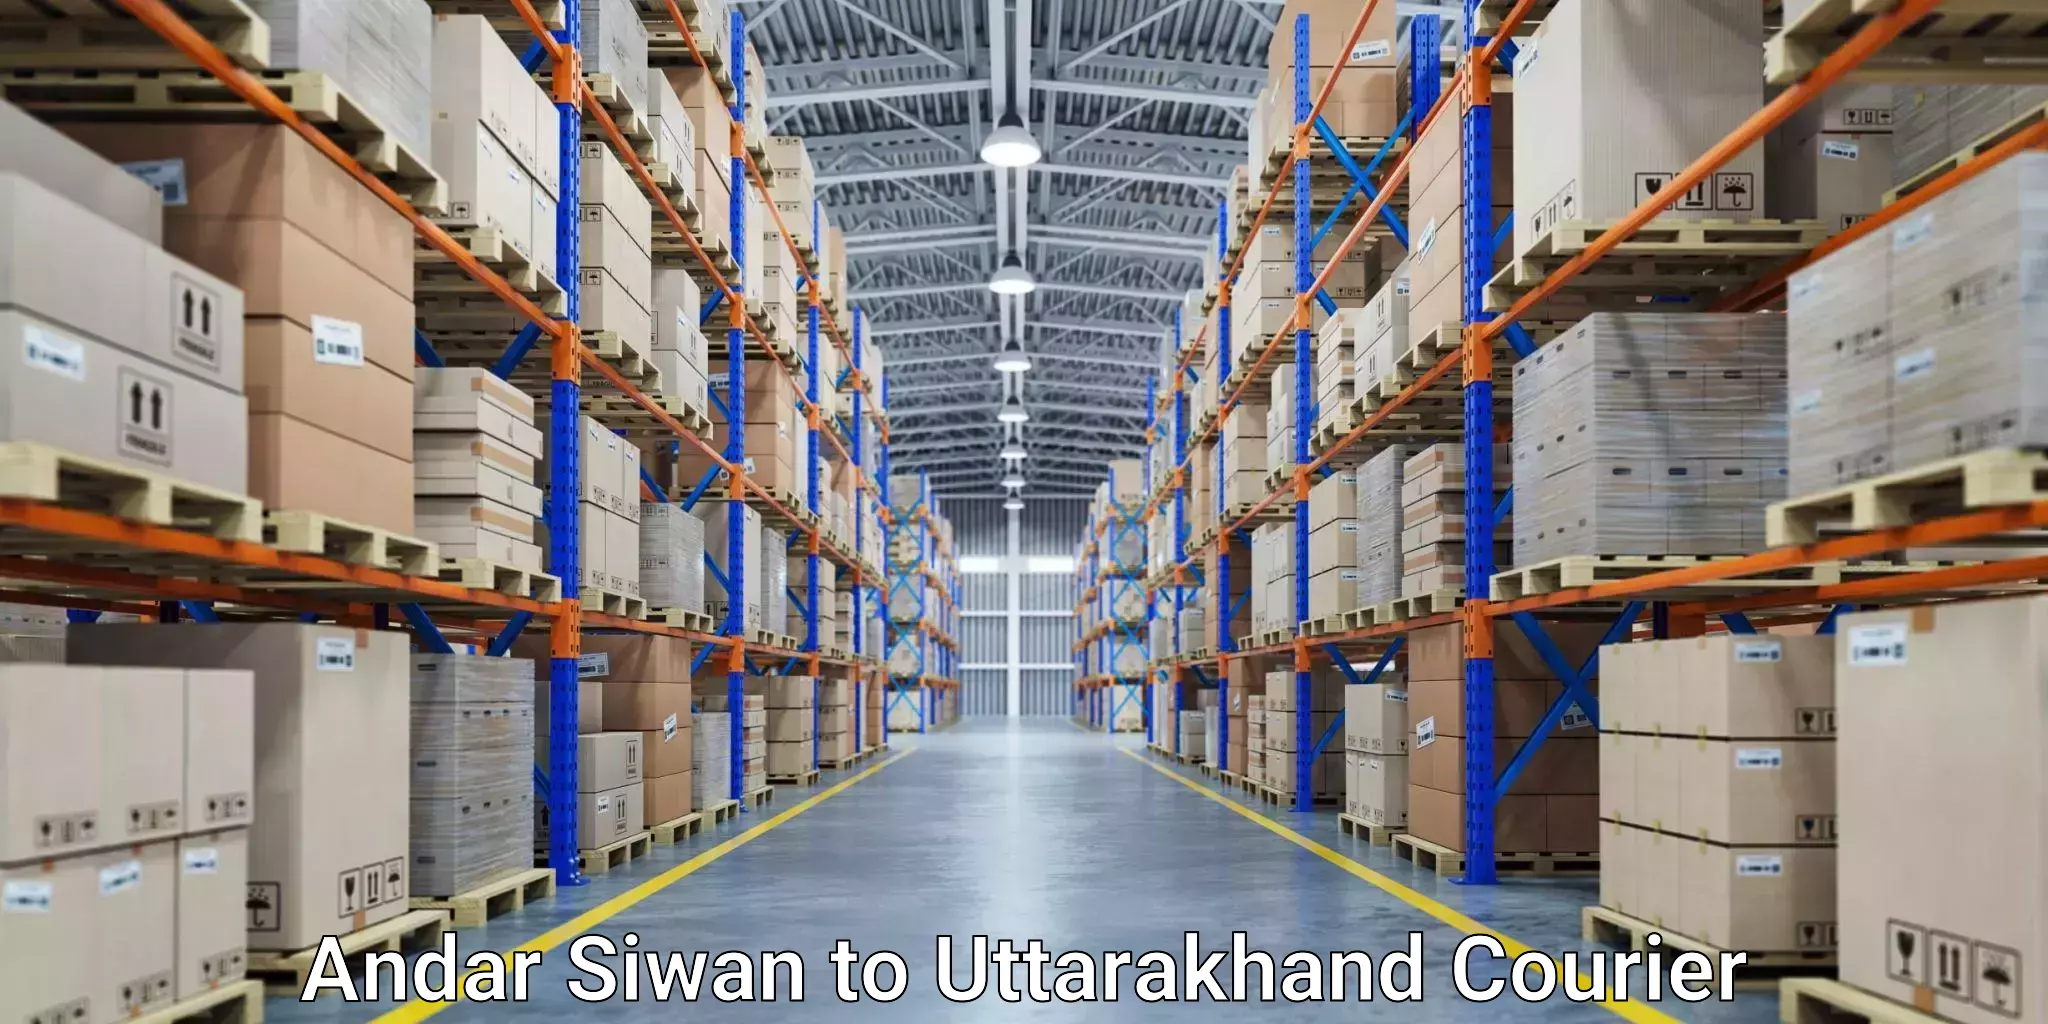 Customer-centric shipping Andar Siwan to Uttarakhand